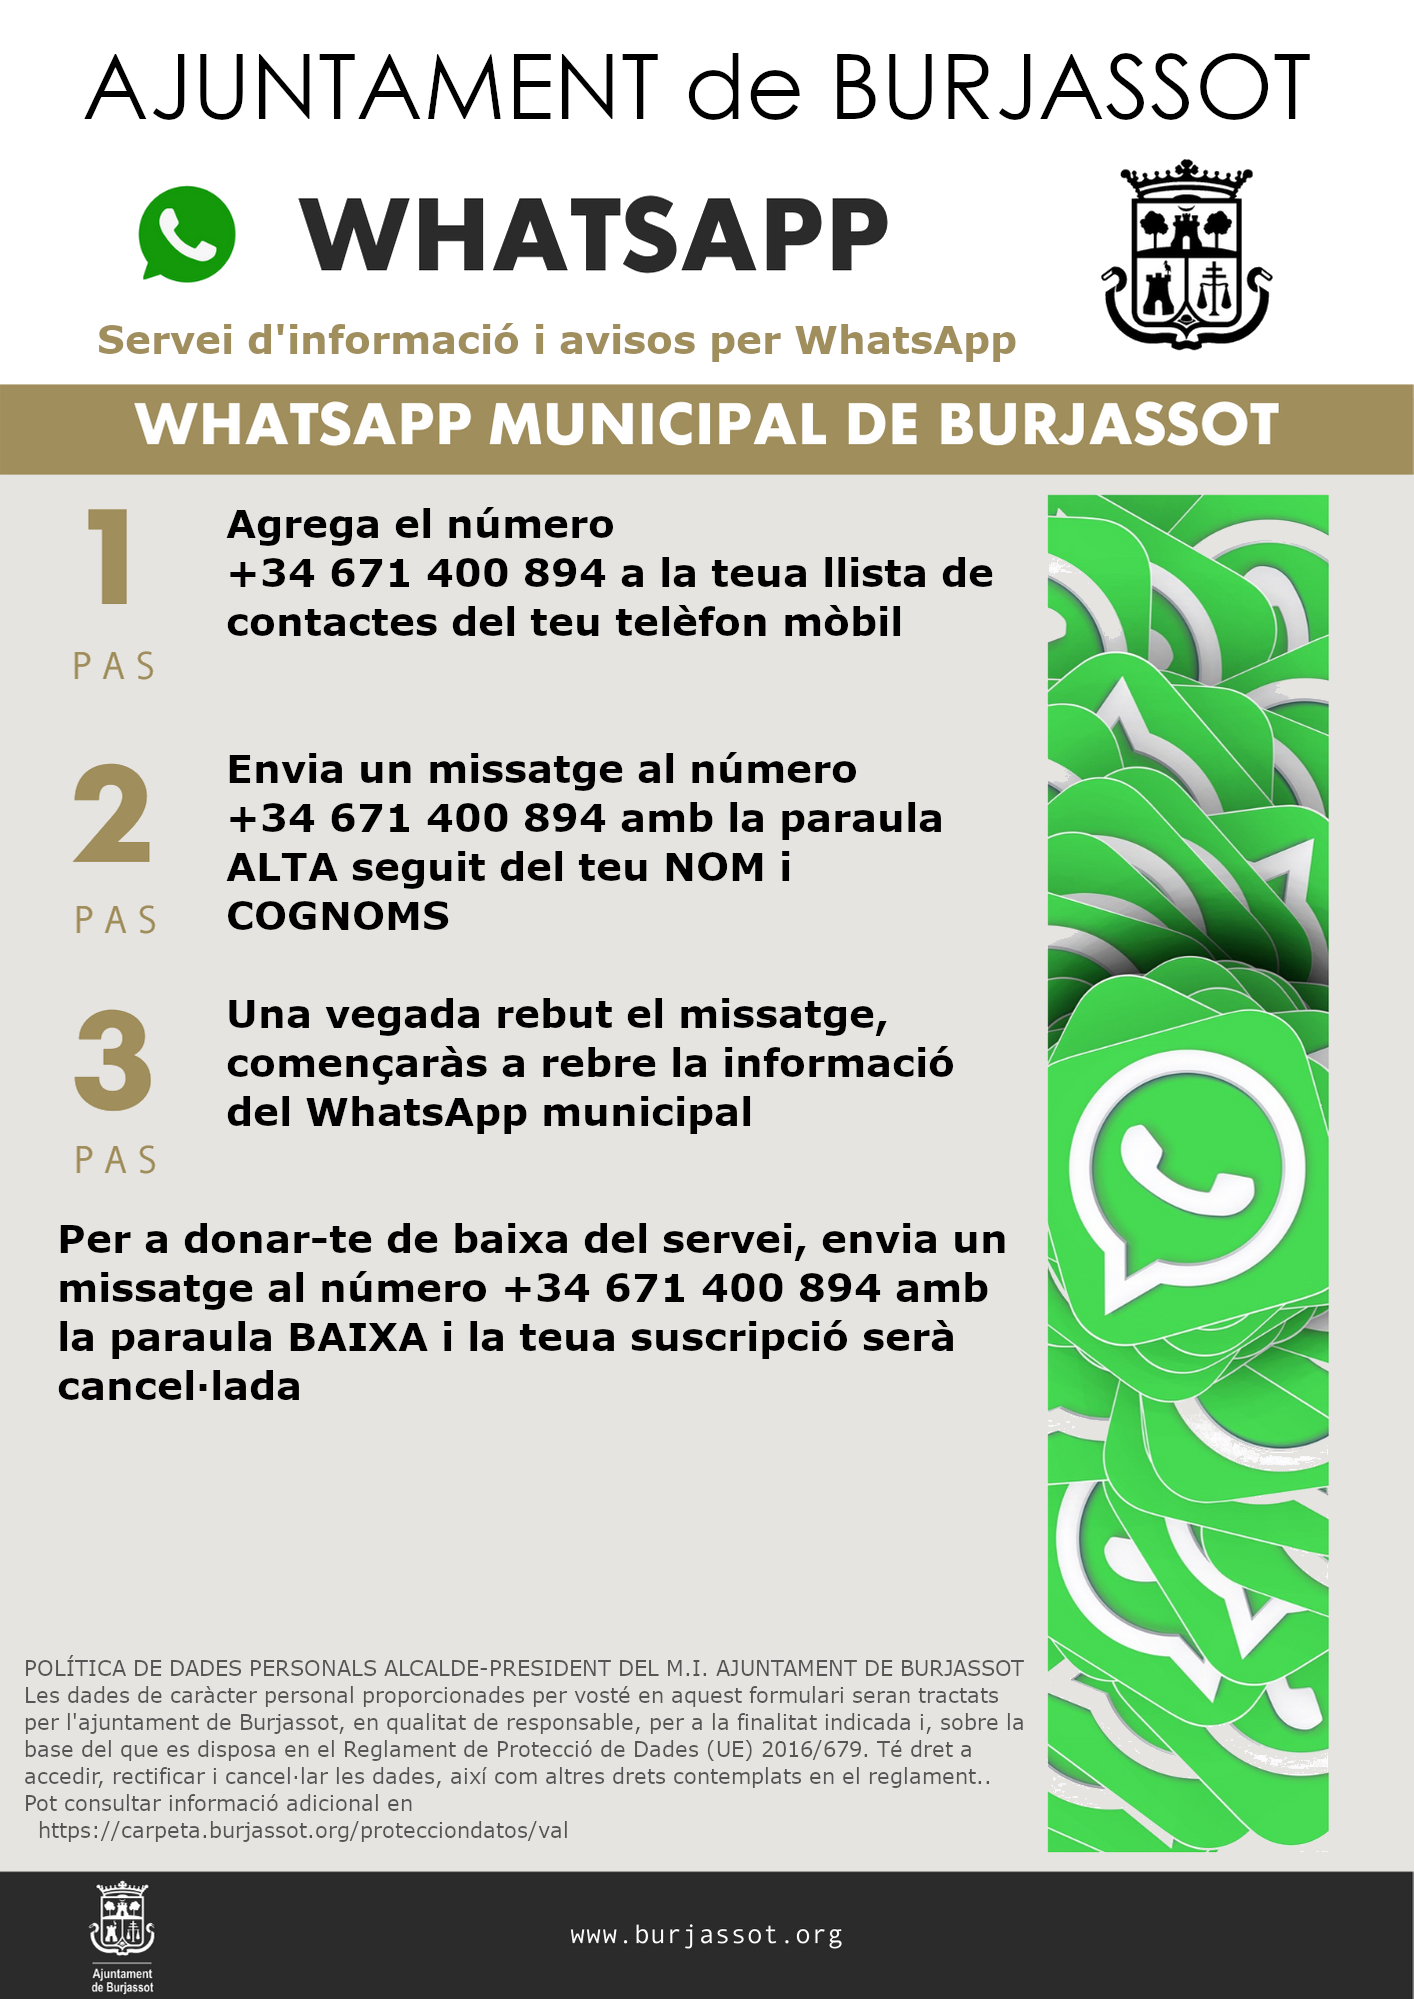 Servicio de información y avisos por WhatsApp